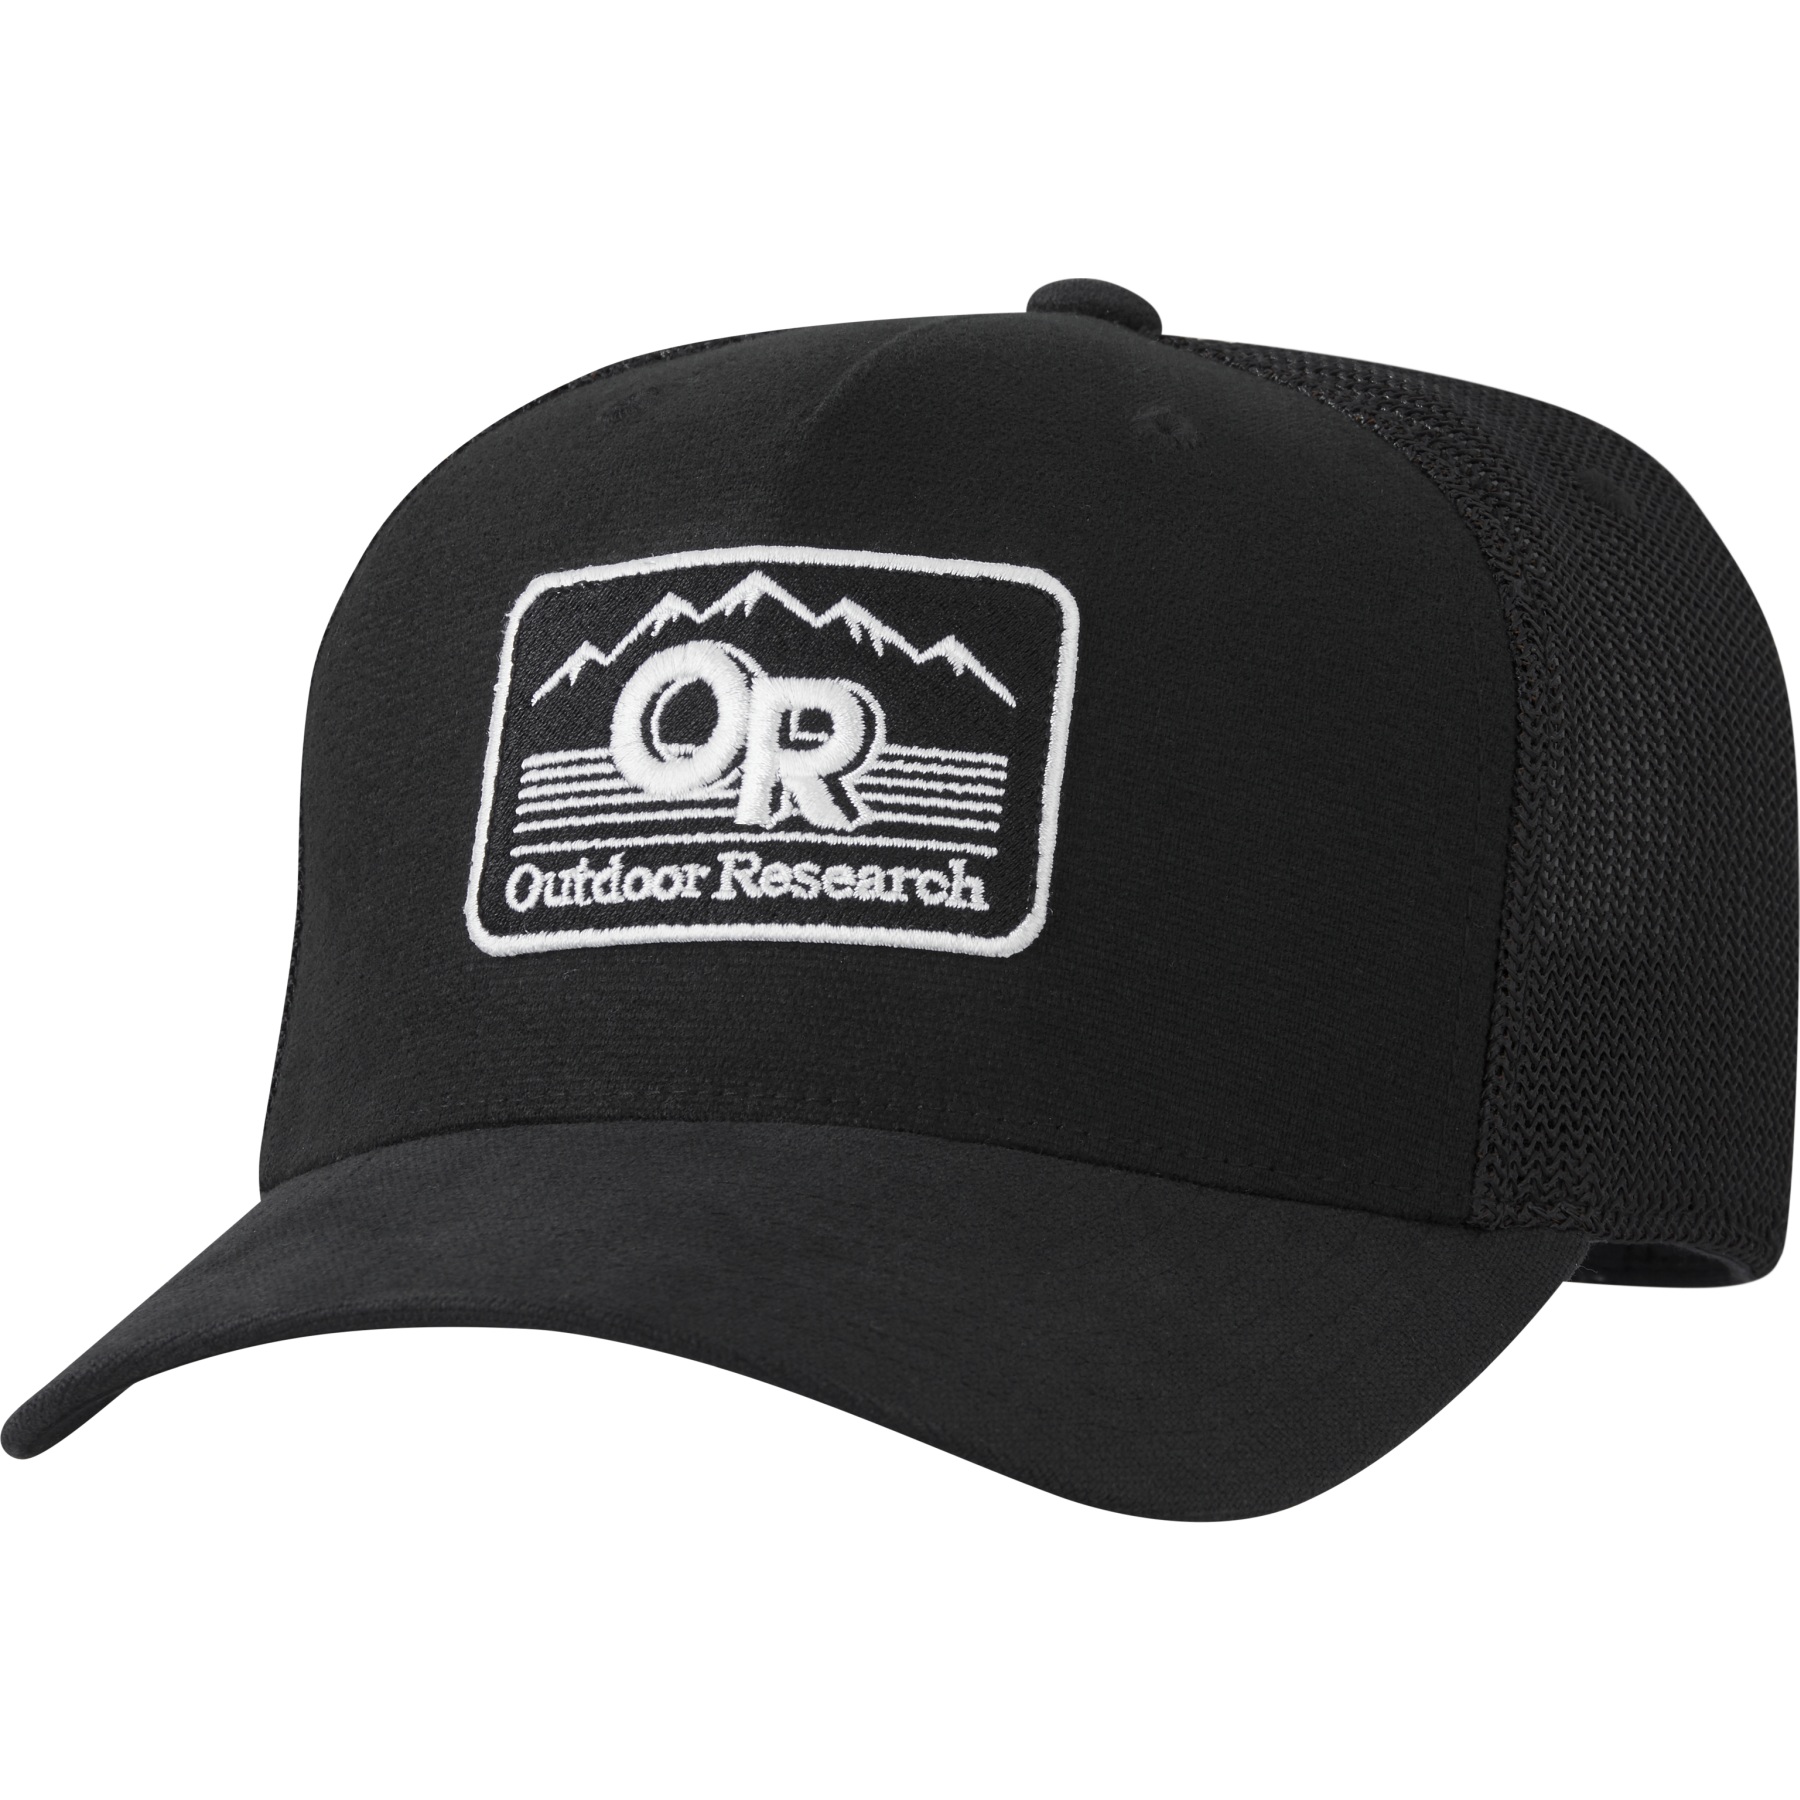 Produktbild von Outdoor Research Advocate Trucker Cap - schwarz